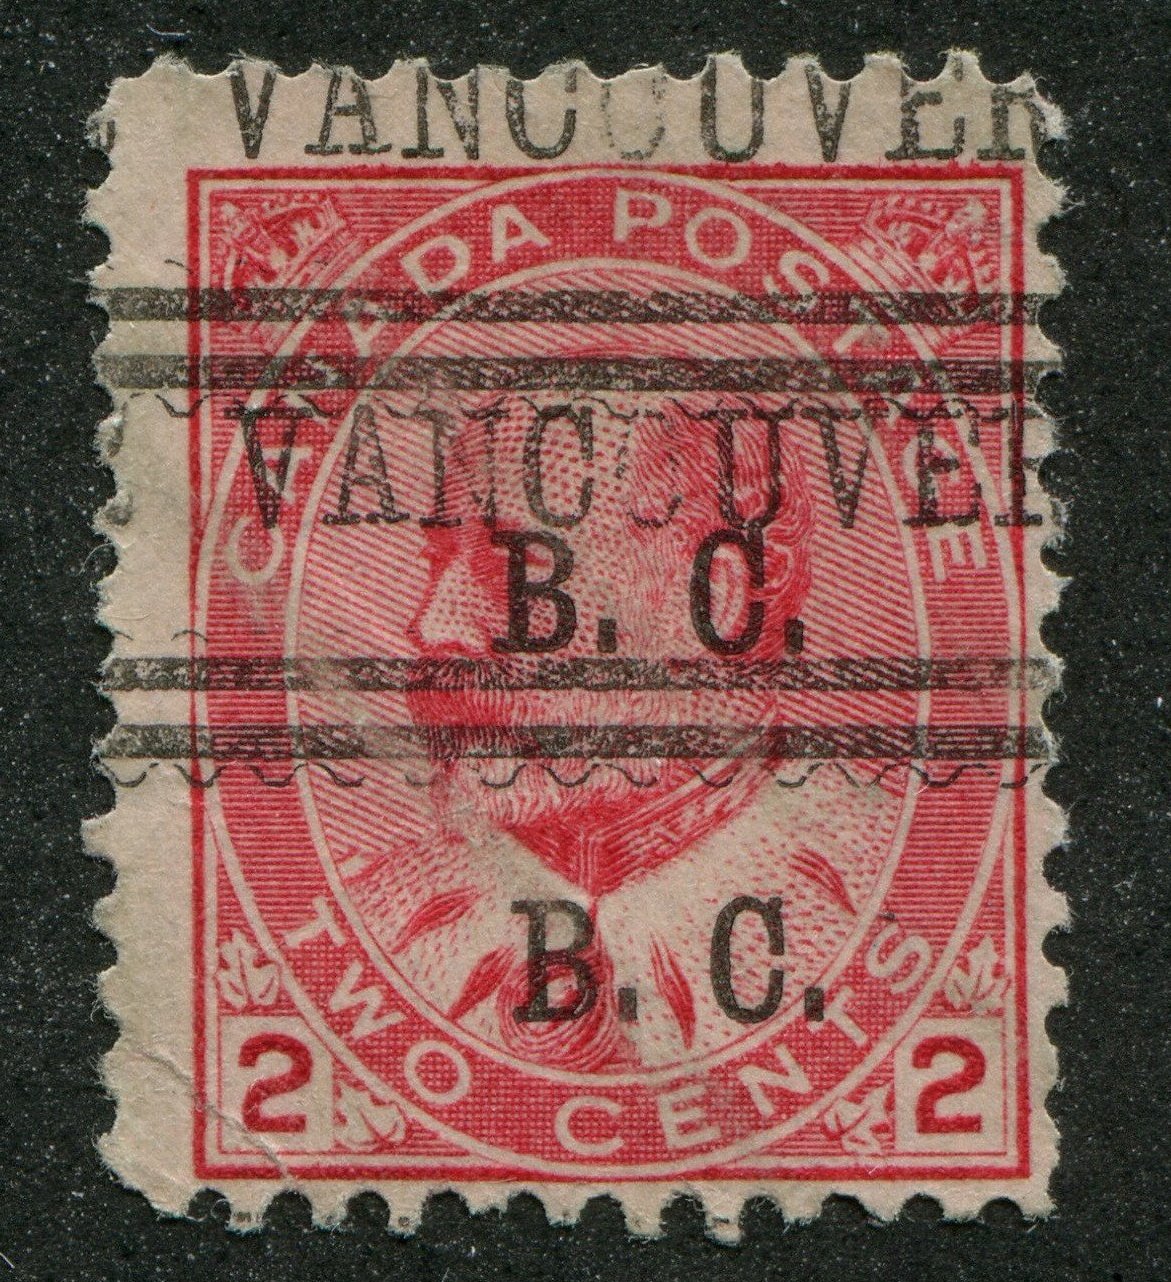 VANC001090 - VANCOUVER 1-90-D